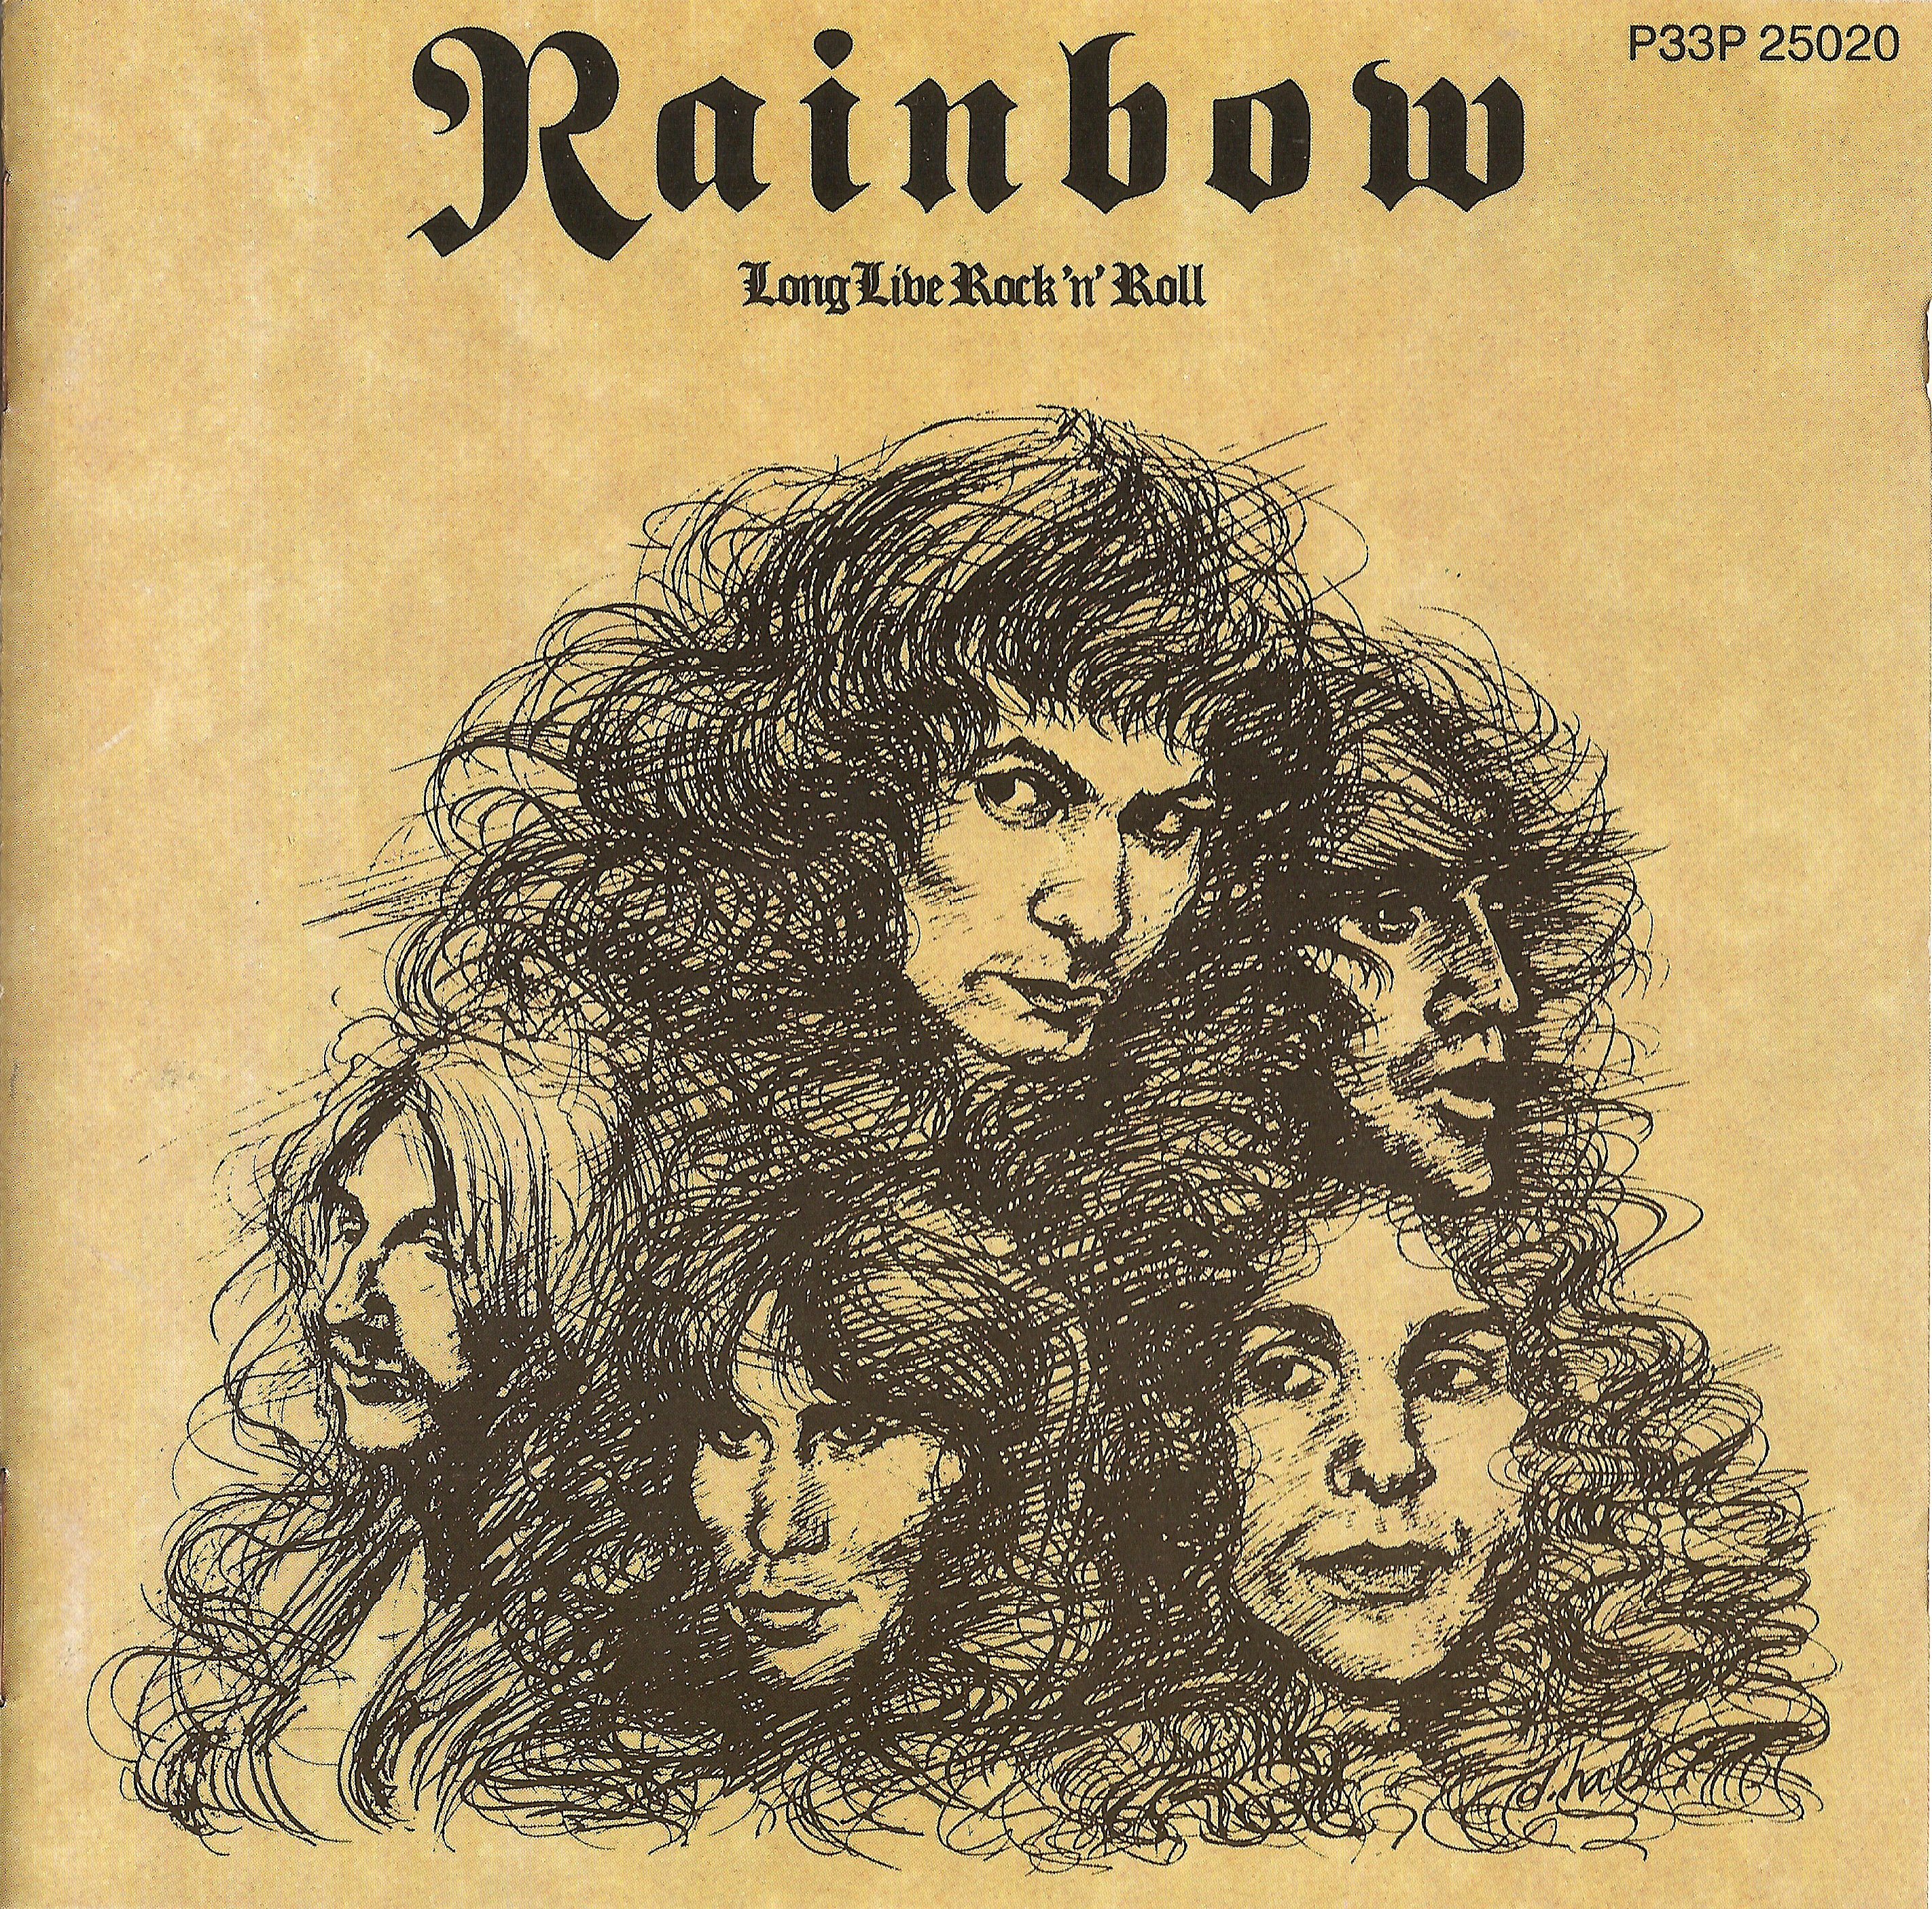 1978: Long Live Rock ’n’ Roll